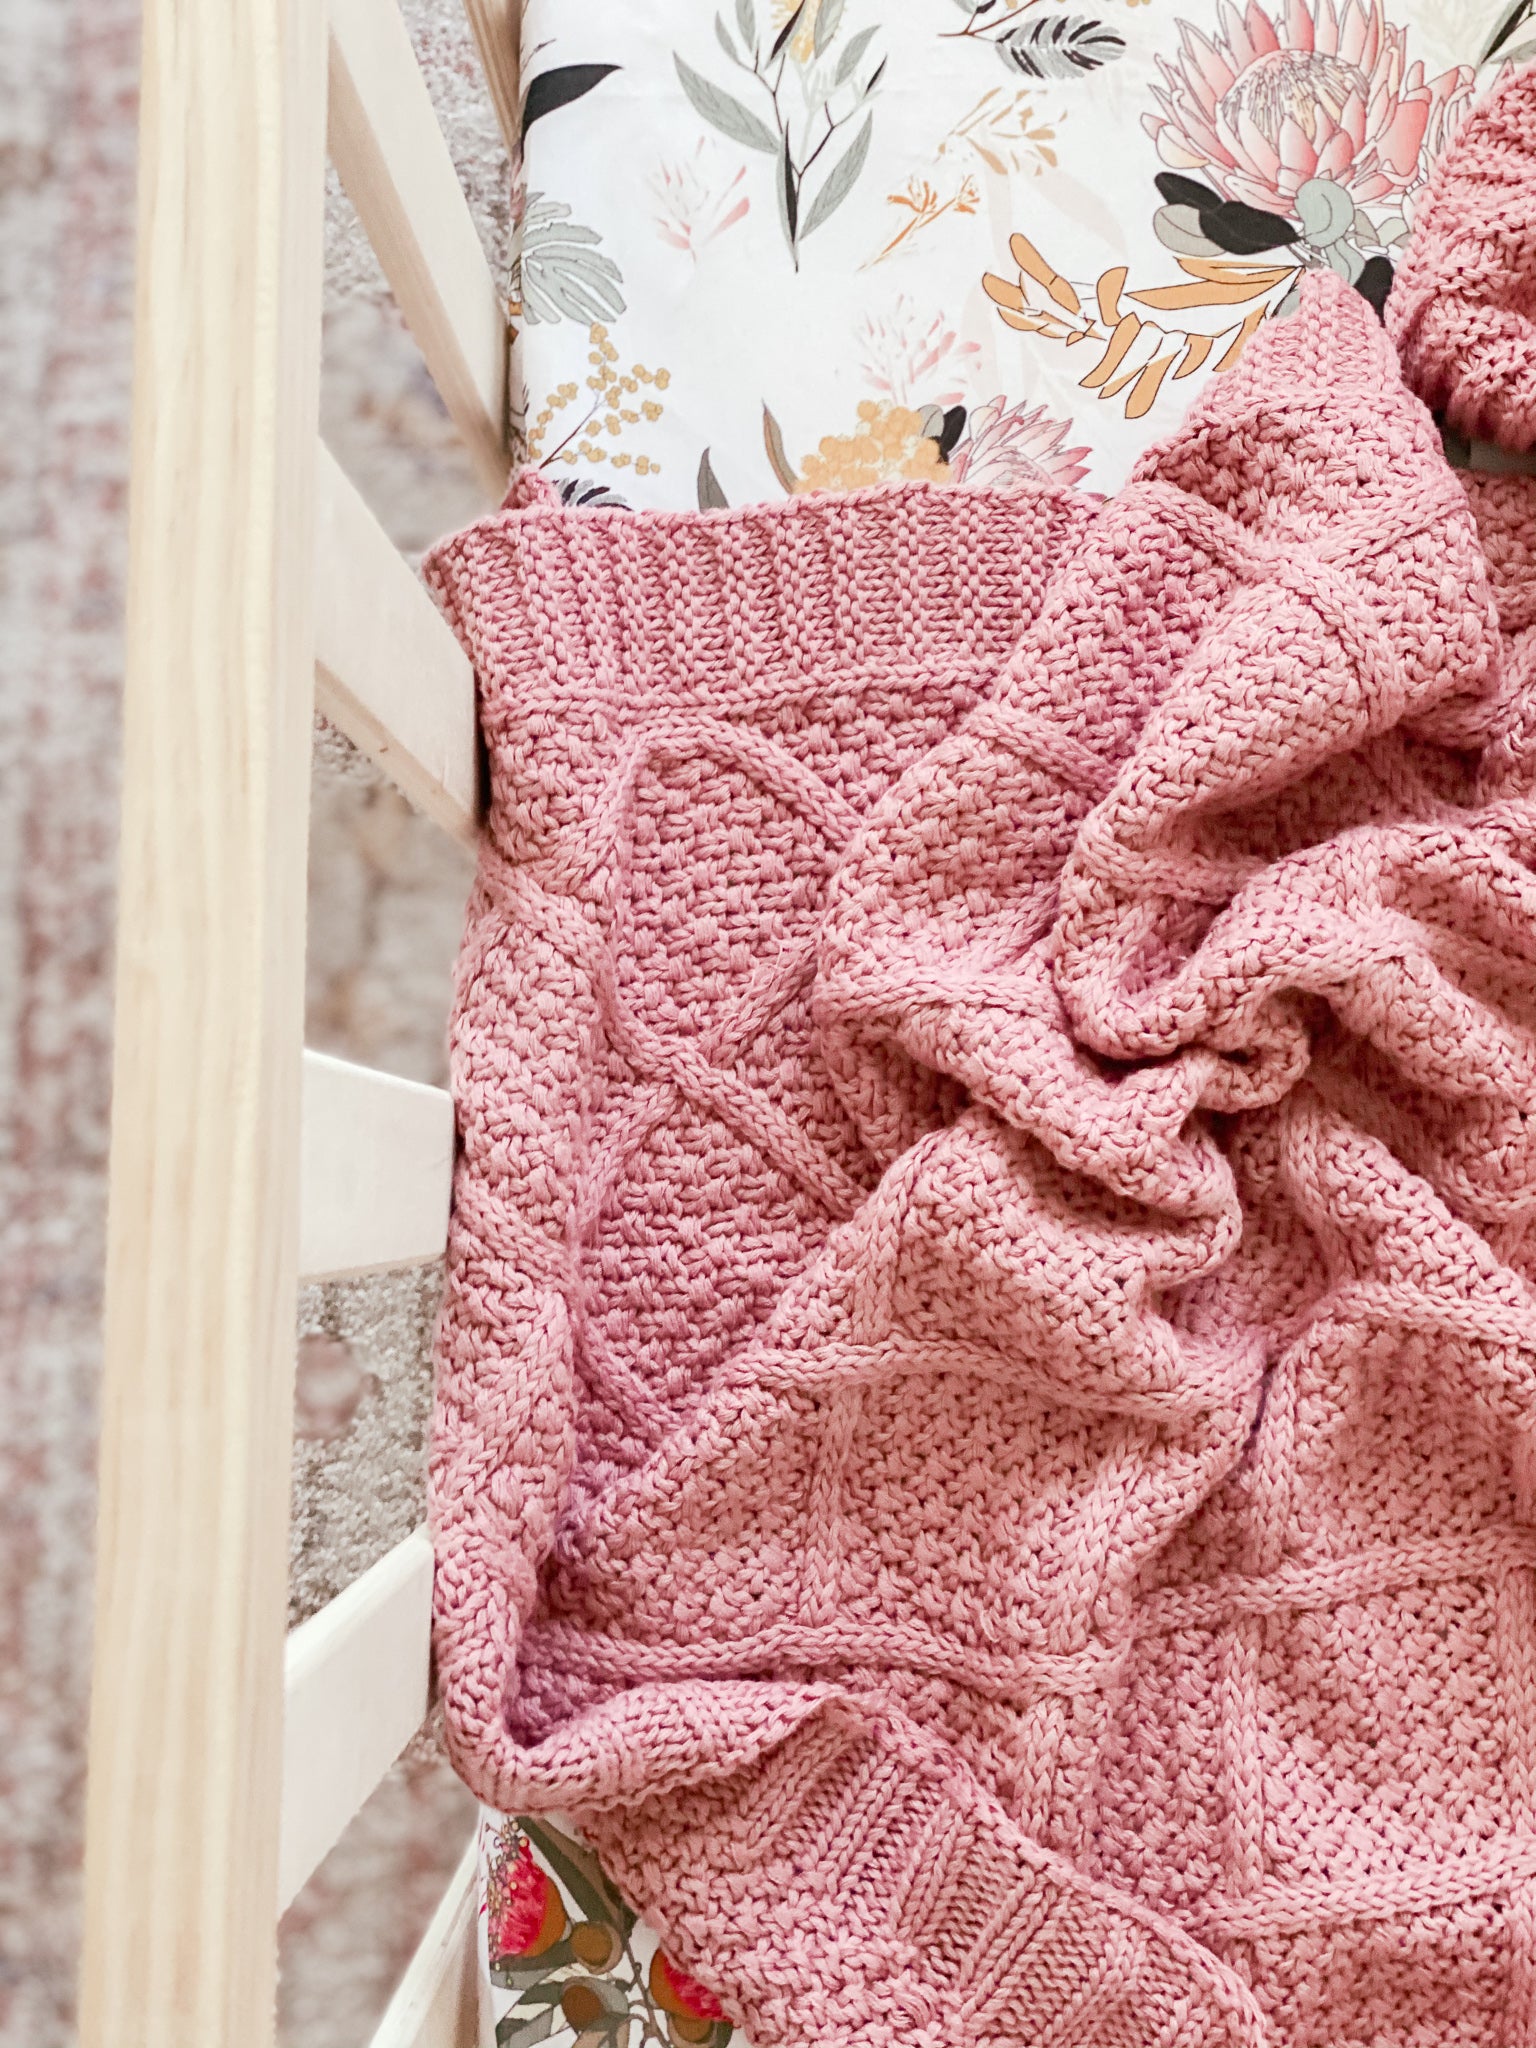 Rose Knitted Blanket